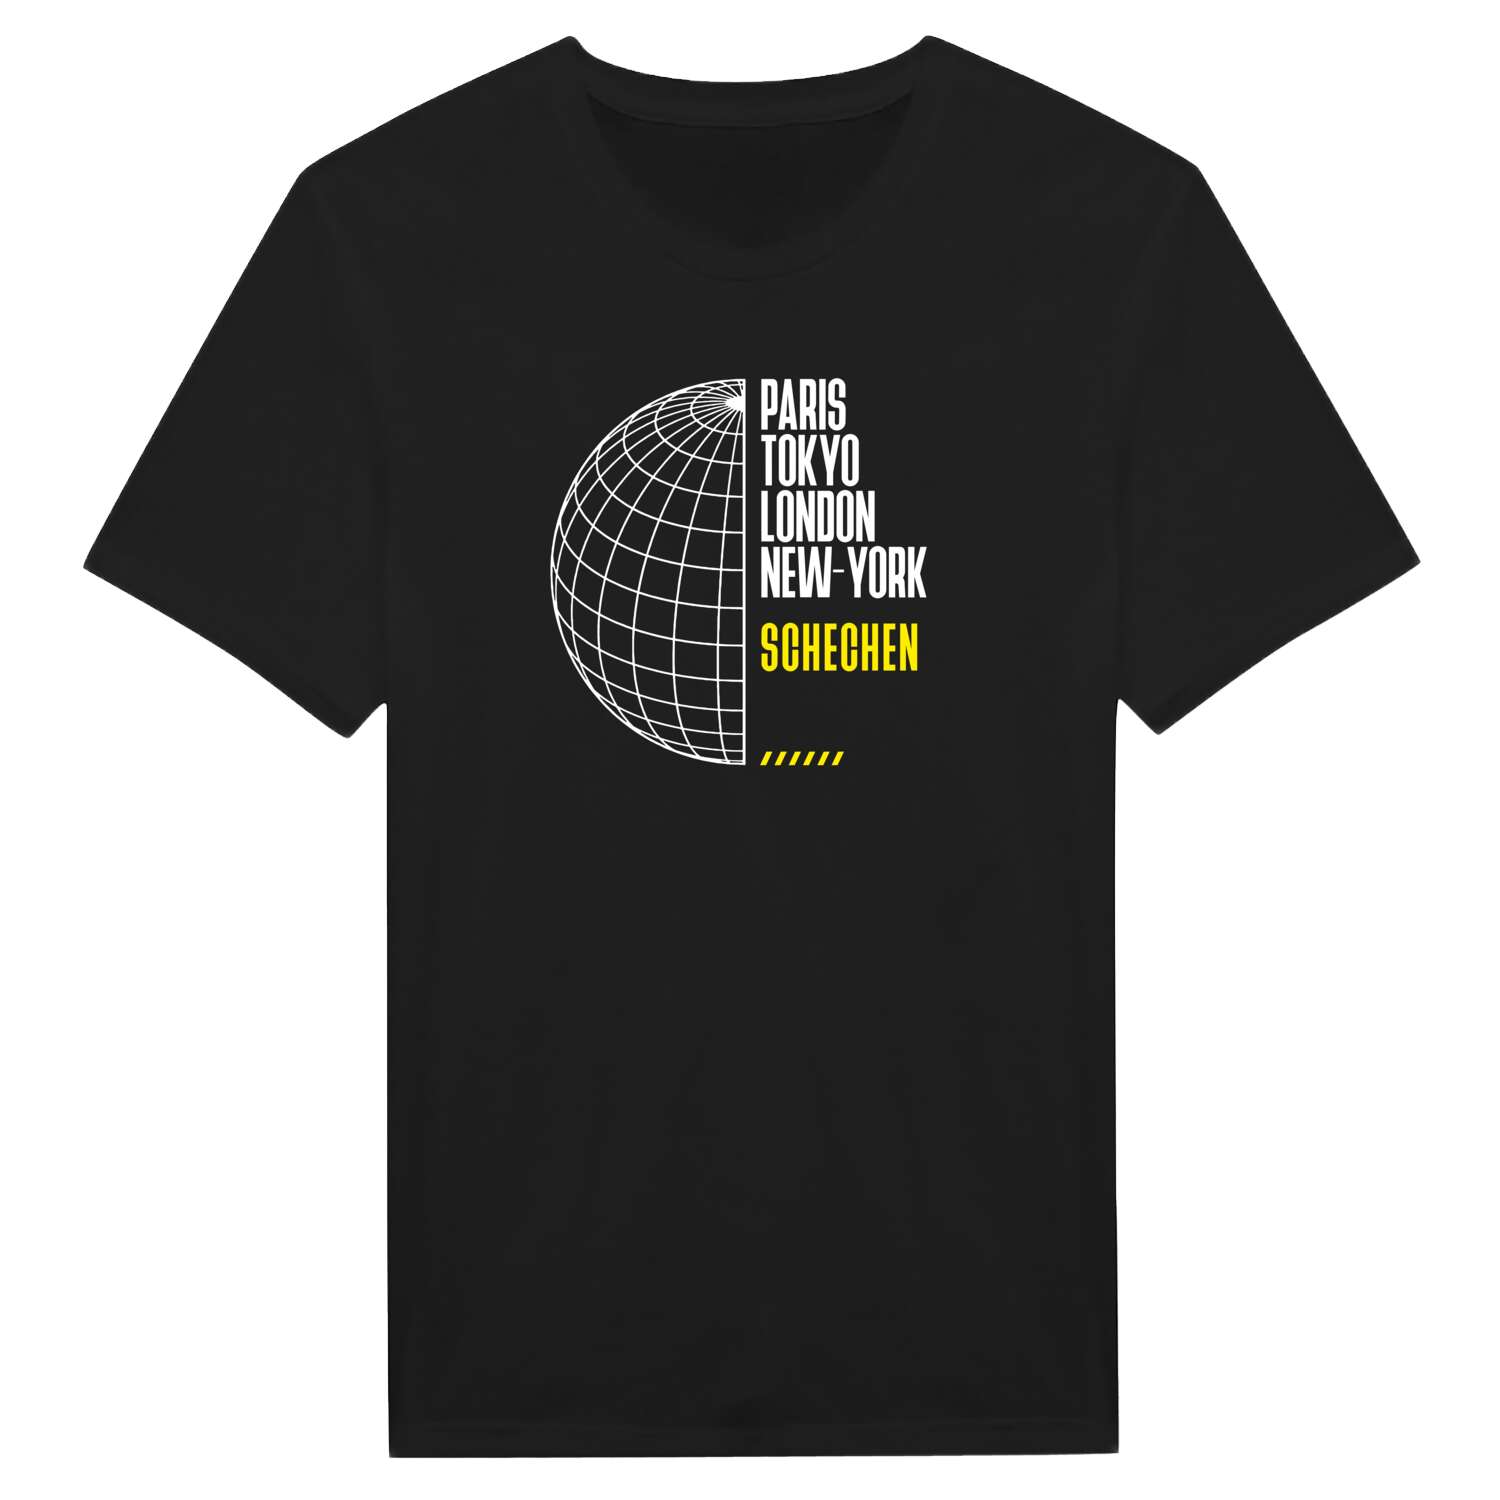 Schechen T-Shirt »Paris Tokyo London«